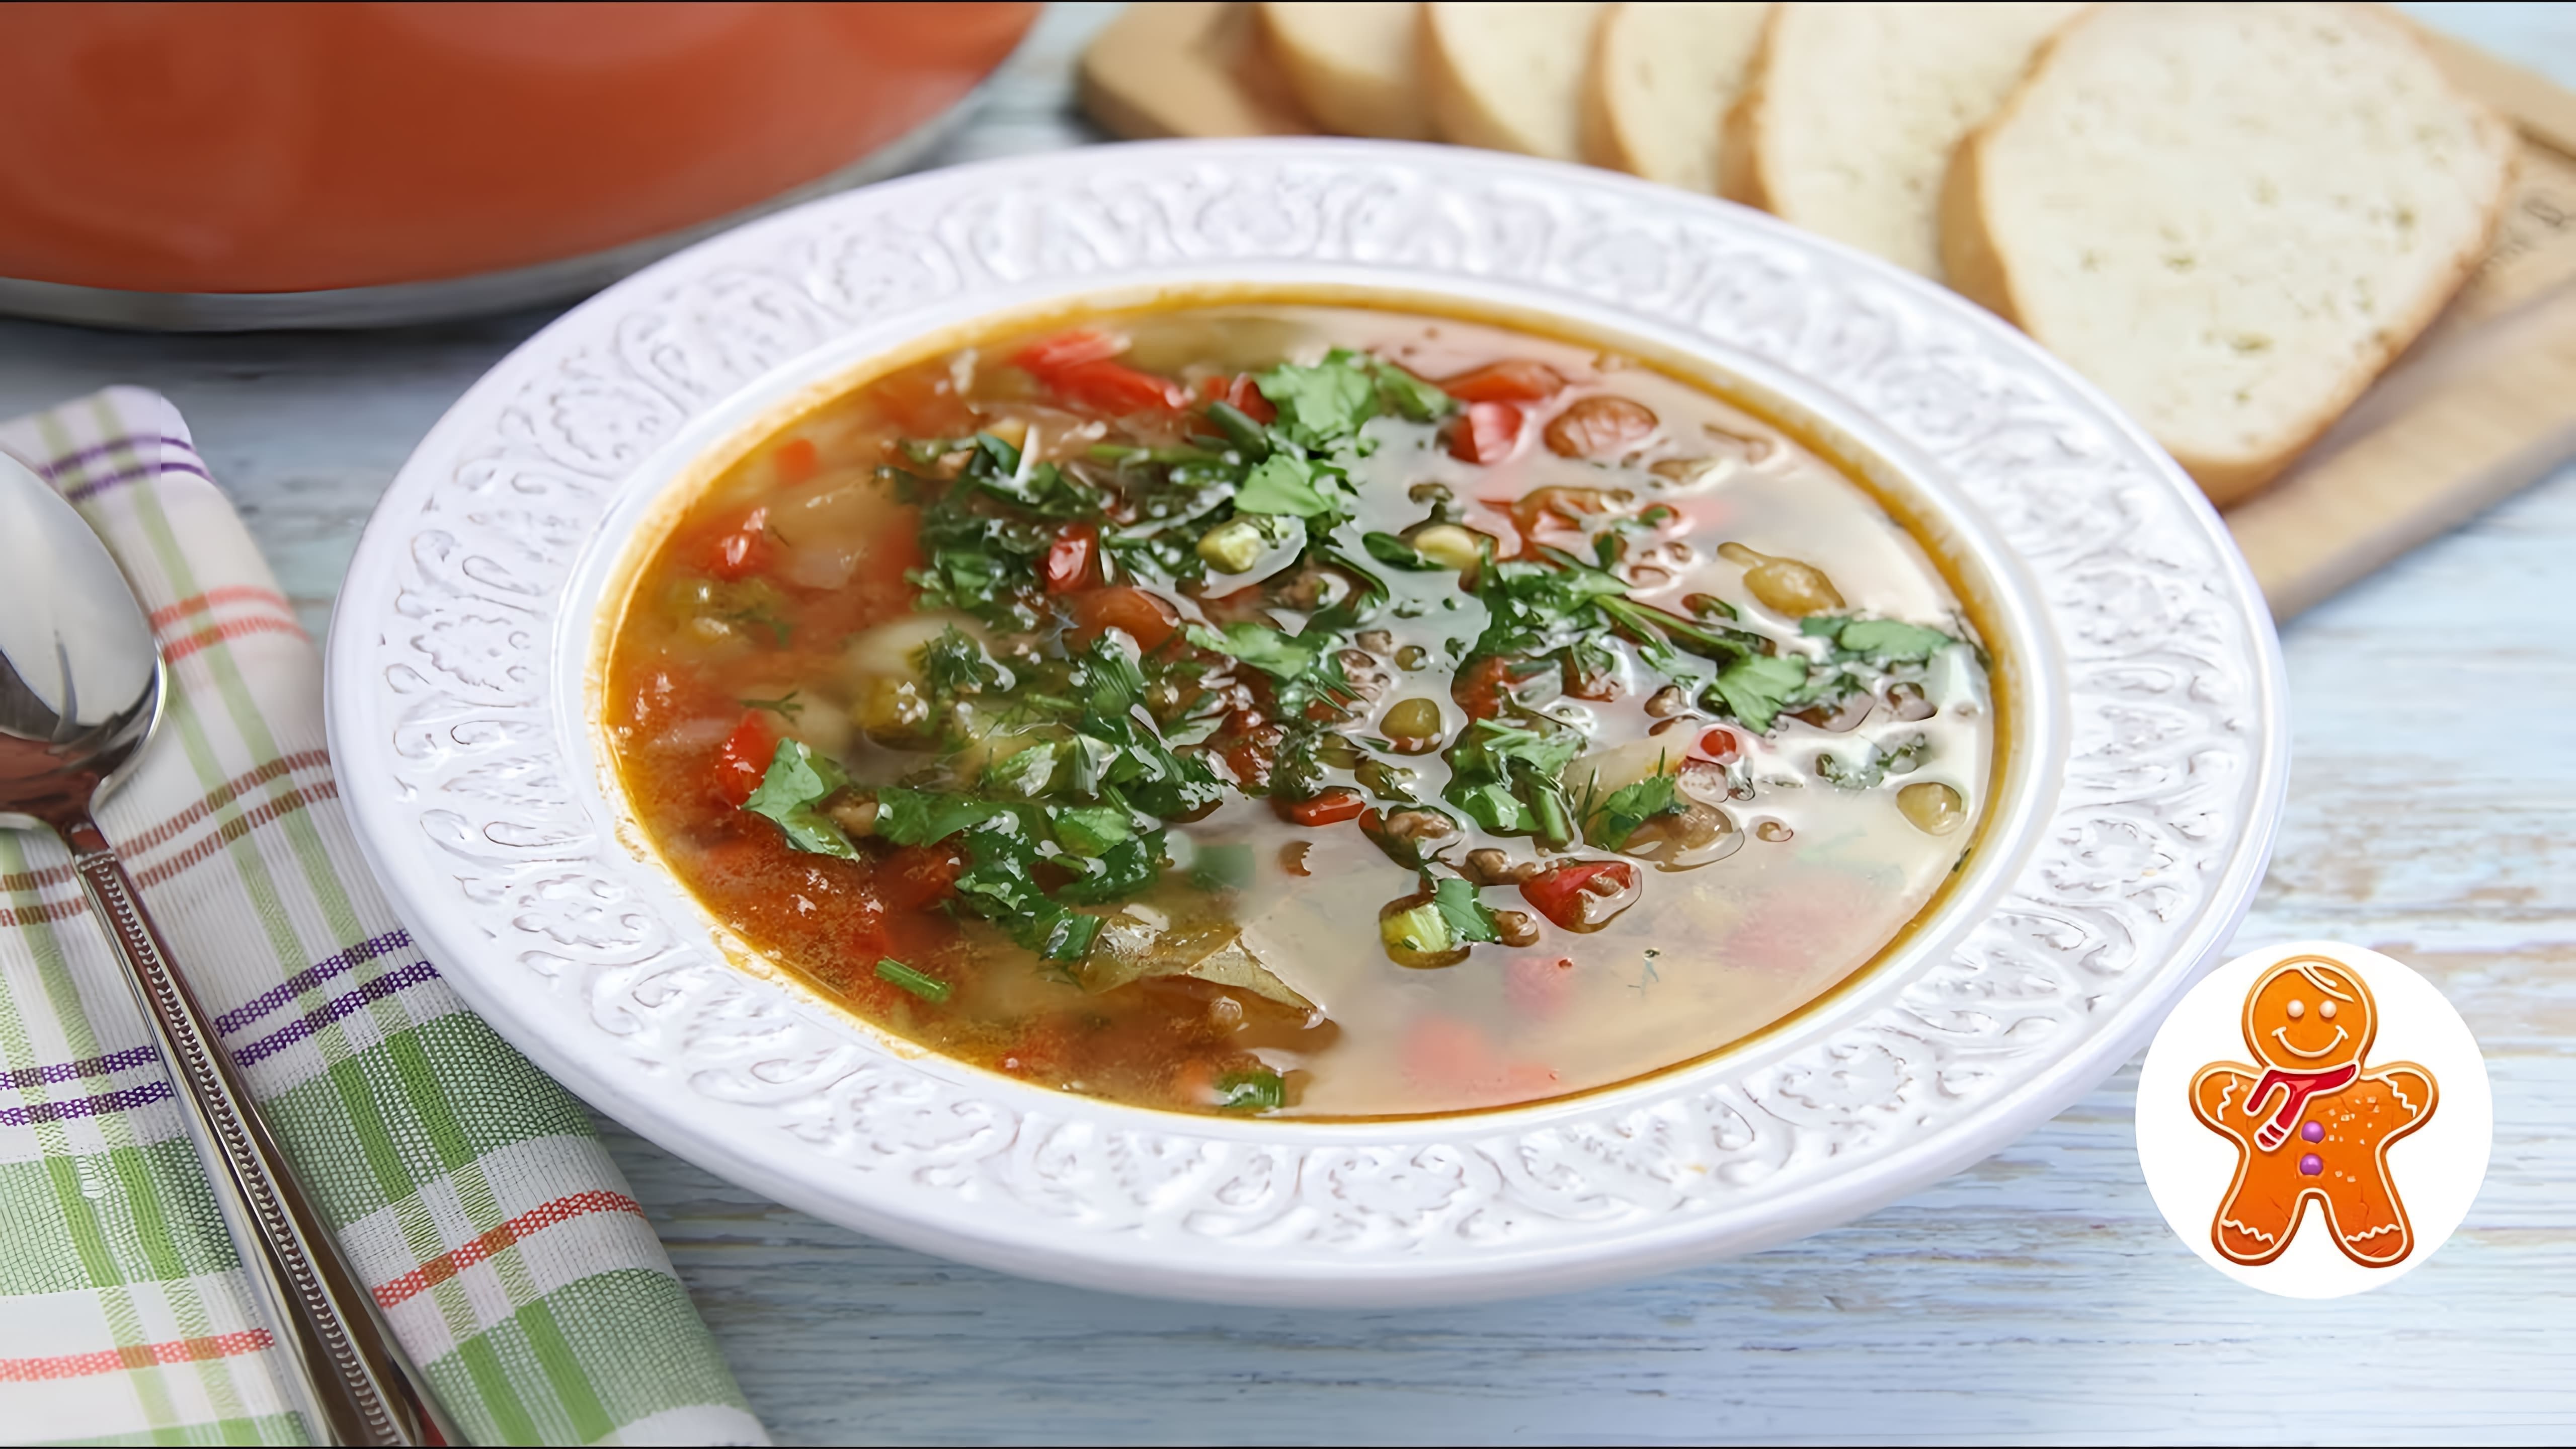 В этом видео демонстрируется рецепт приготовления полноценного мясного супа на скорую руку